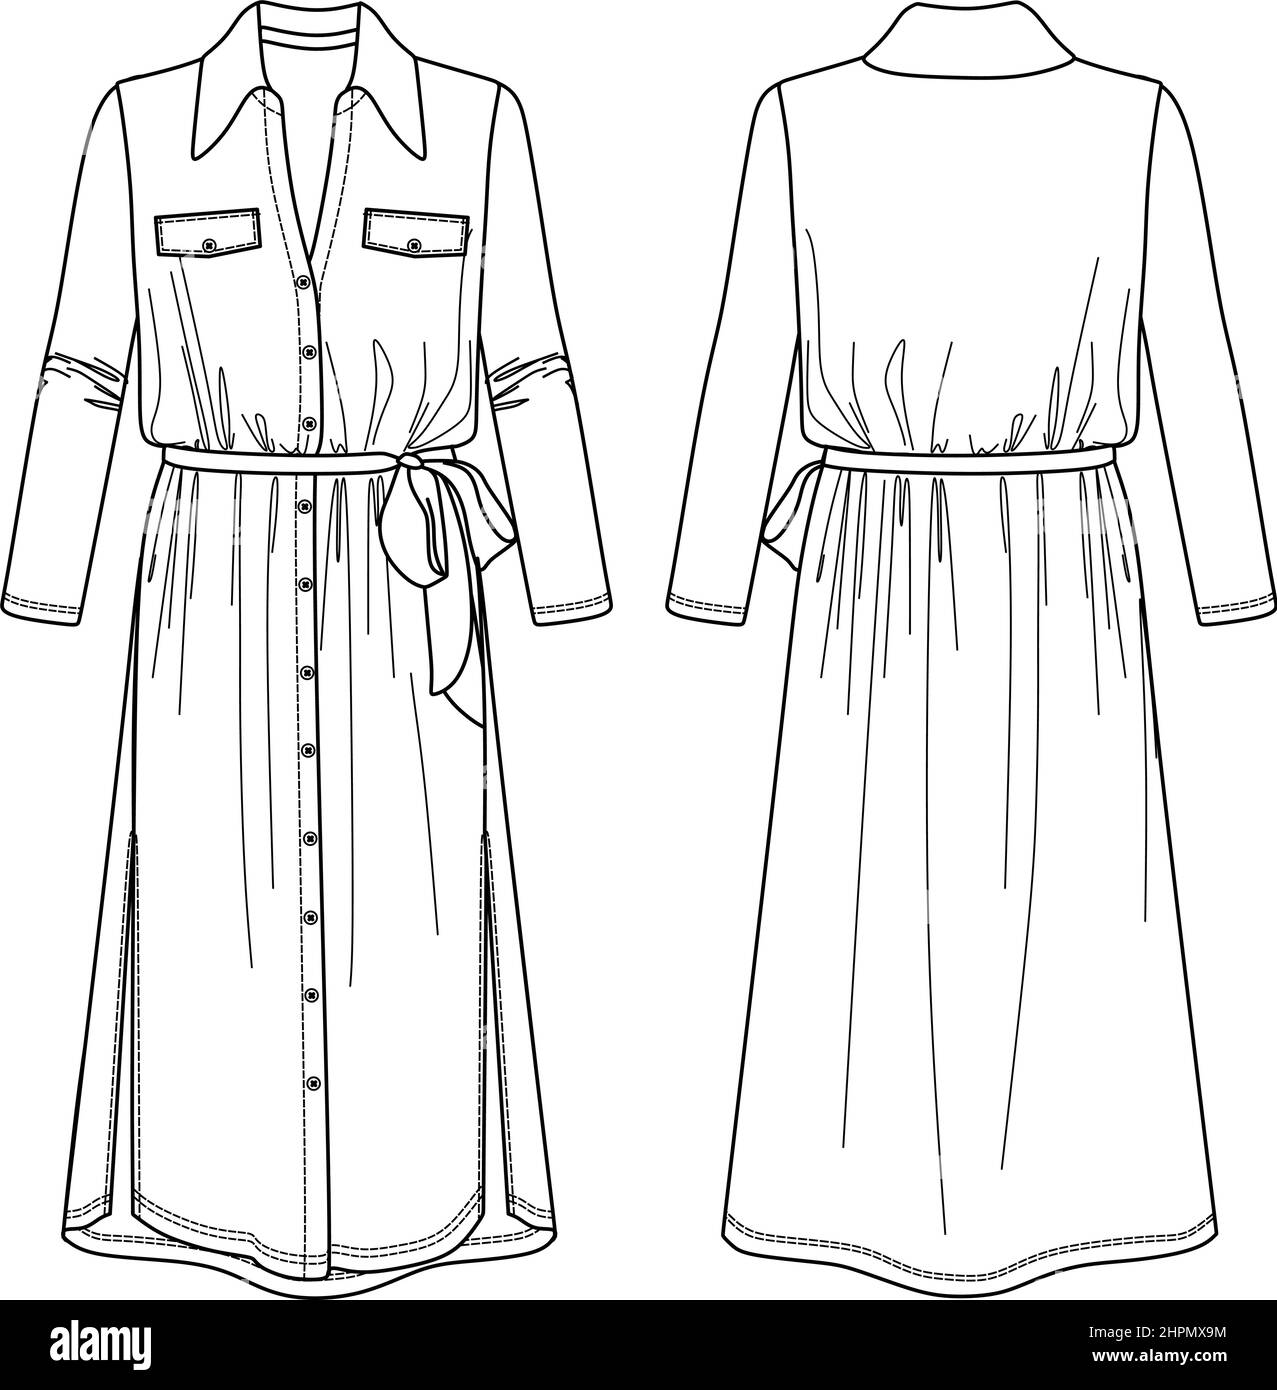 Dessin technique vectoriel, dessin de mode CAD, croquis de chemise-robe avec boutons Illustration de Vecteur